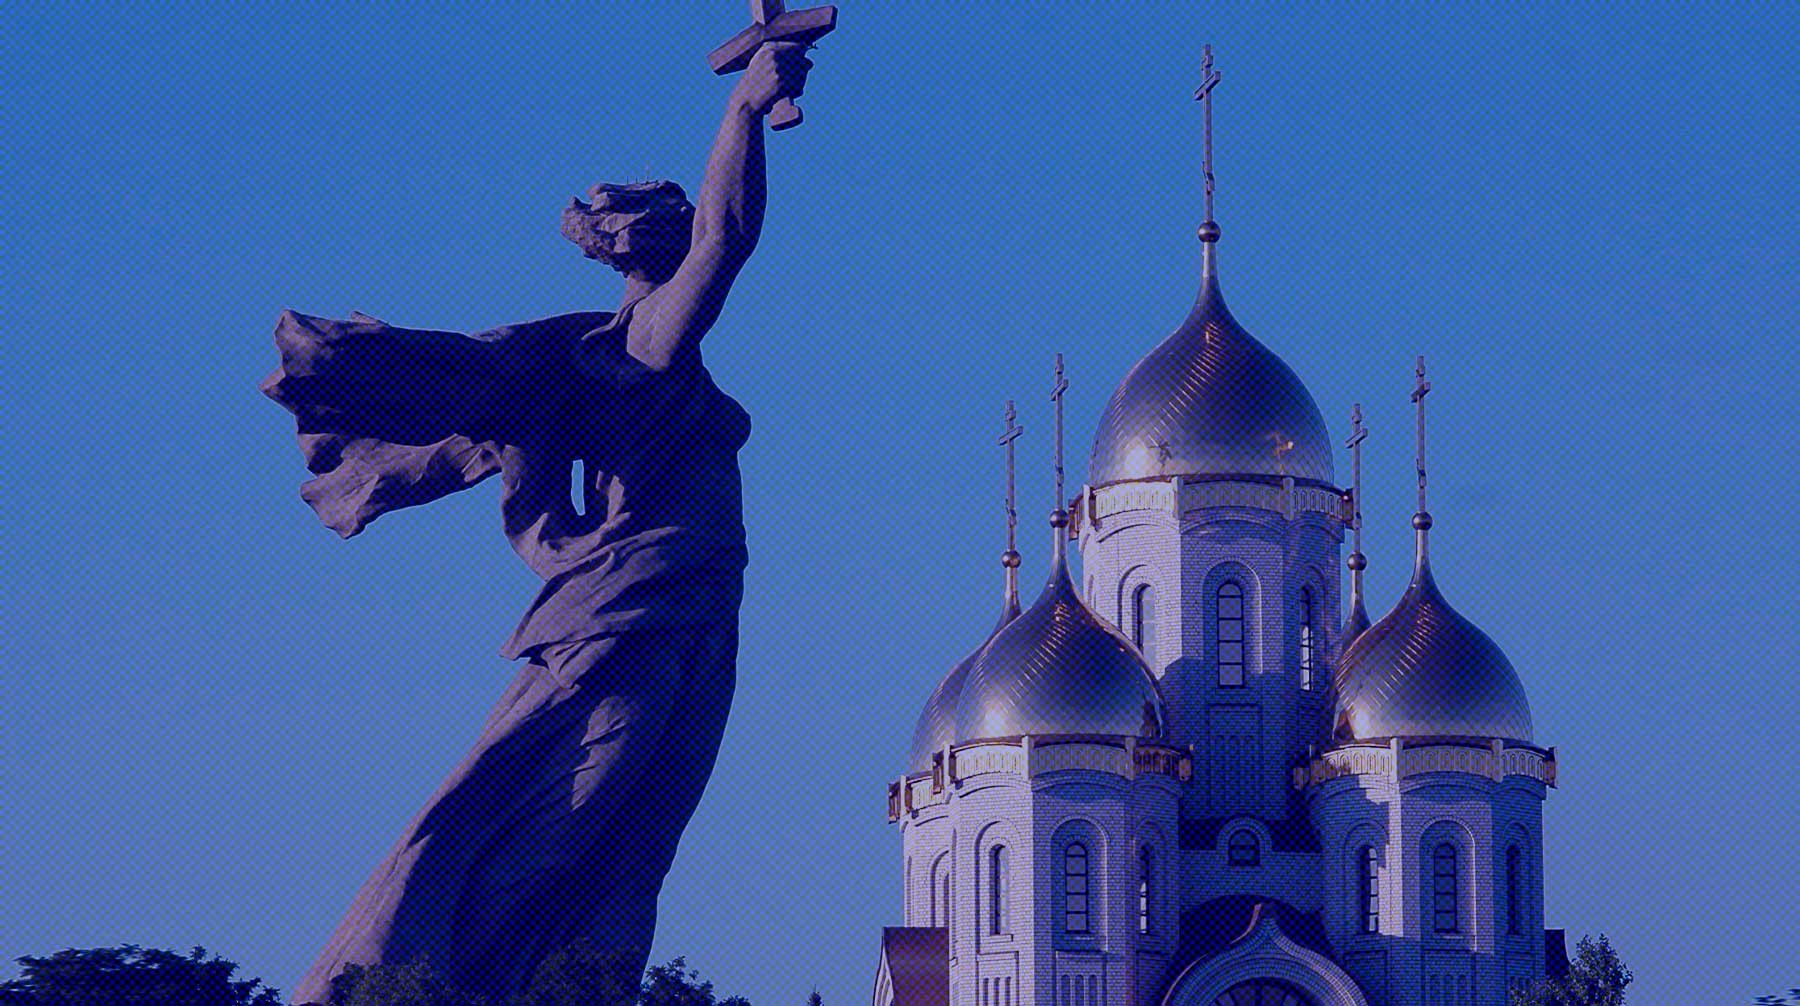 Dailystorm - Политики и деятели культуры поддержали идею «Офицеров России» вернуть Волгограду название Сталинград